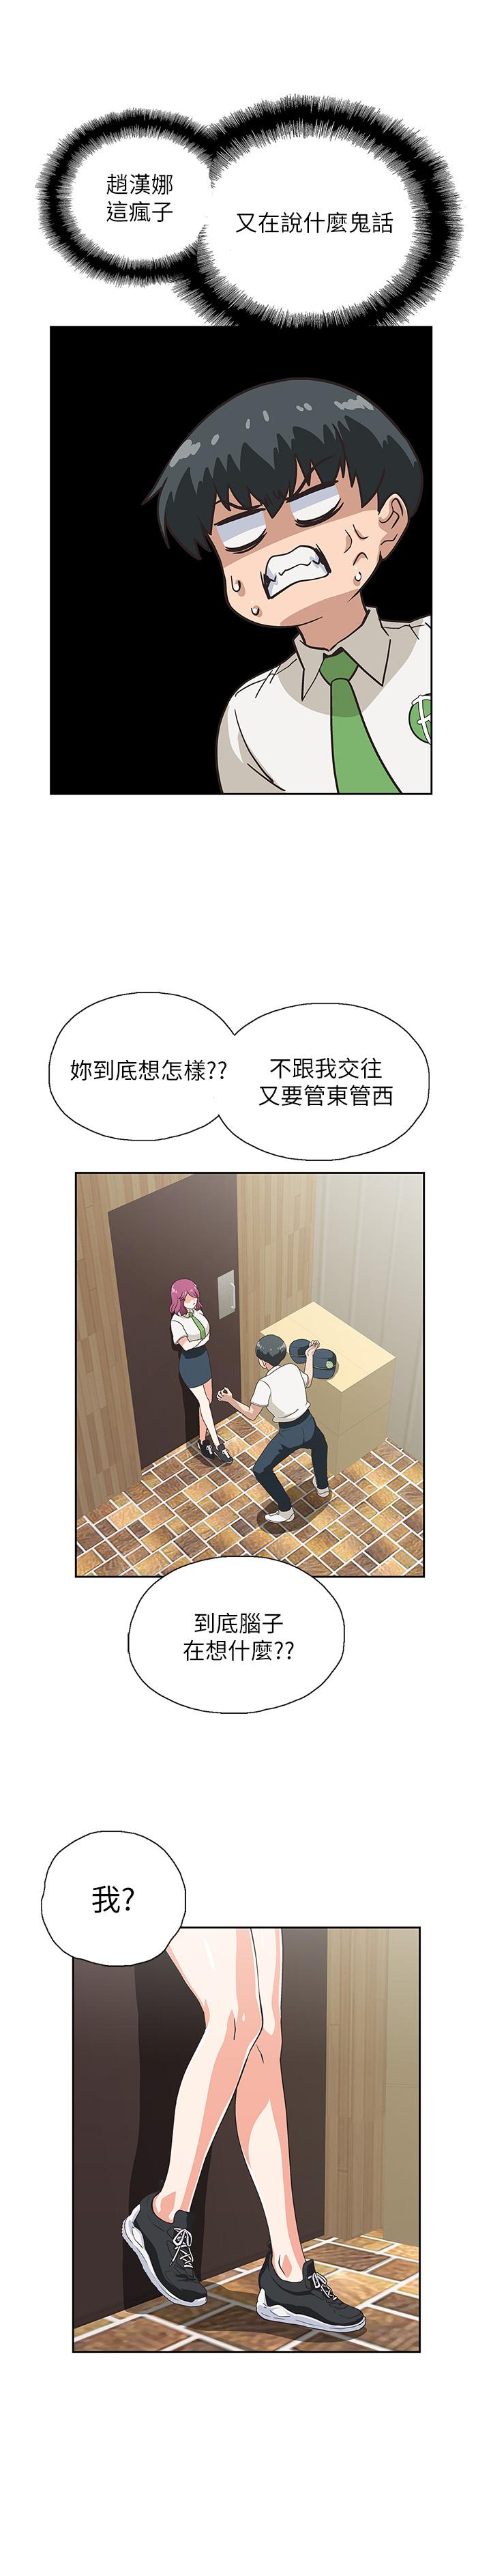 《梦幻速食店》漫画 第10话 - 谁会被征服呢…!?